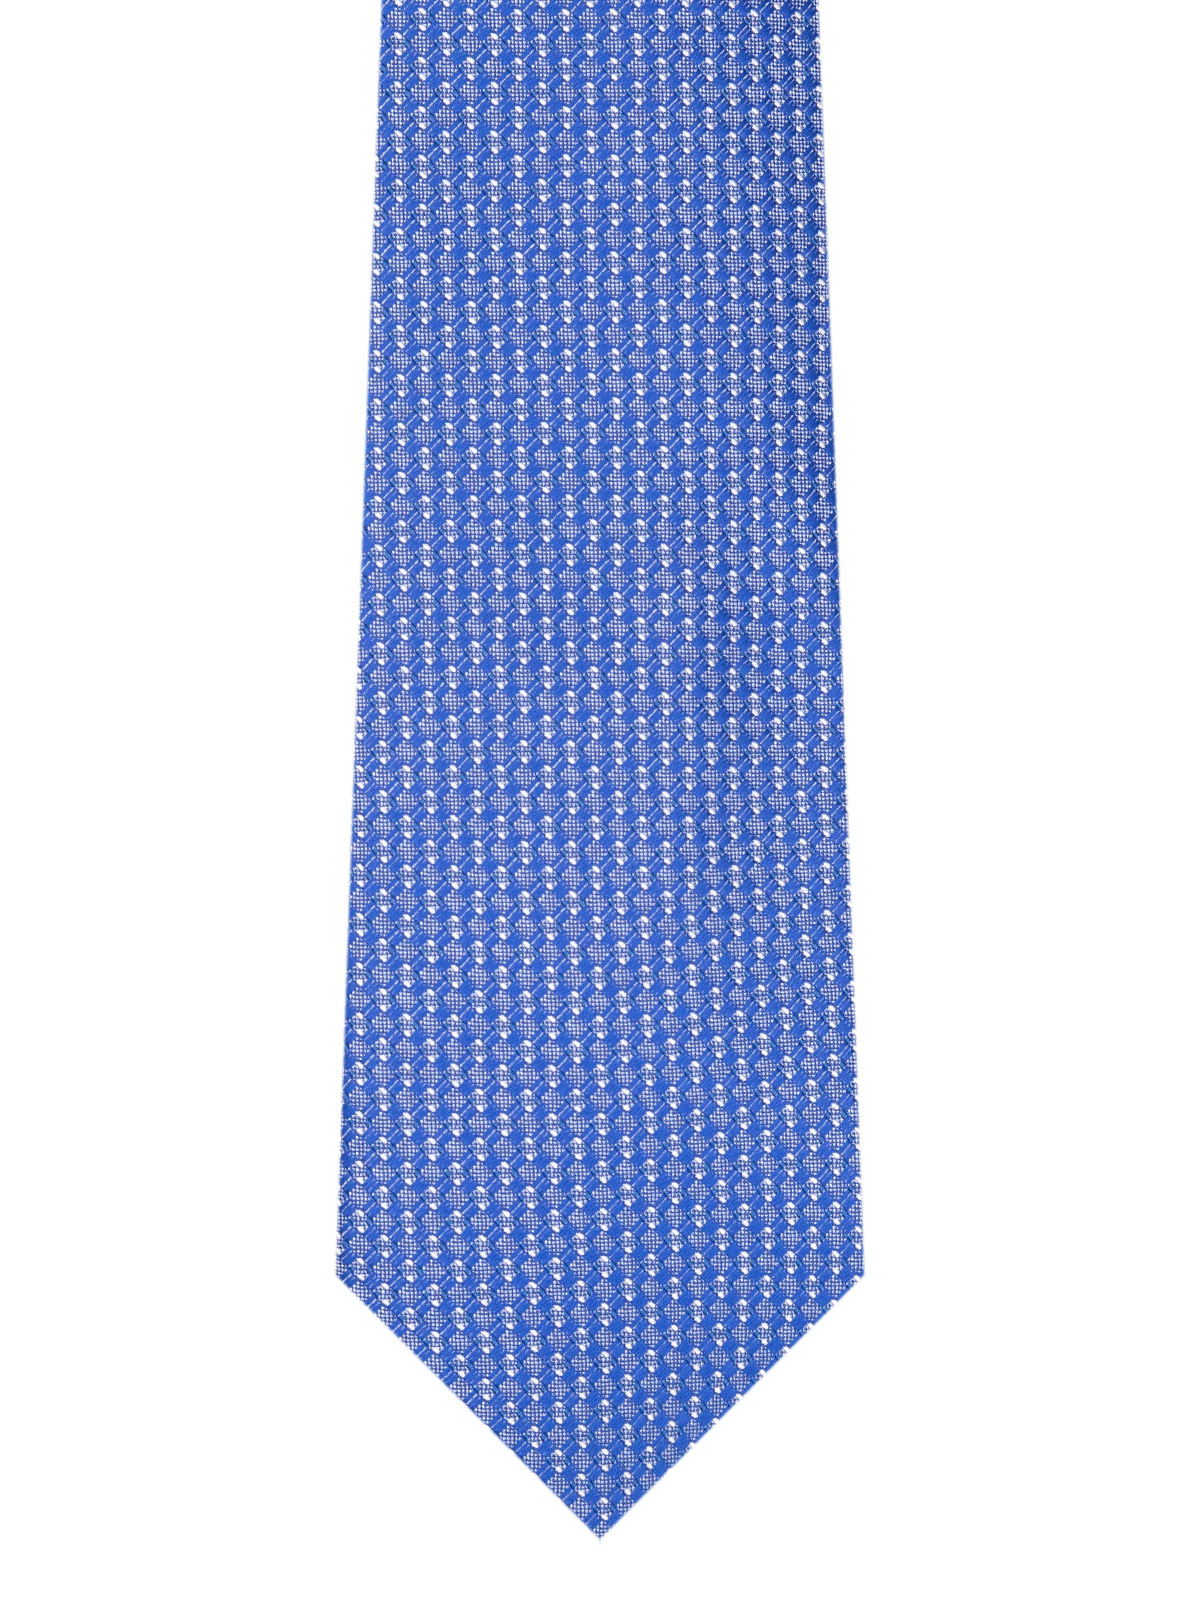 Δομημένη γραβάτα σε γαλάζιο - 10203 - € 14.06 img2